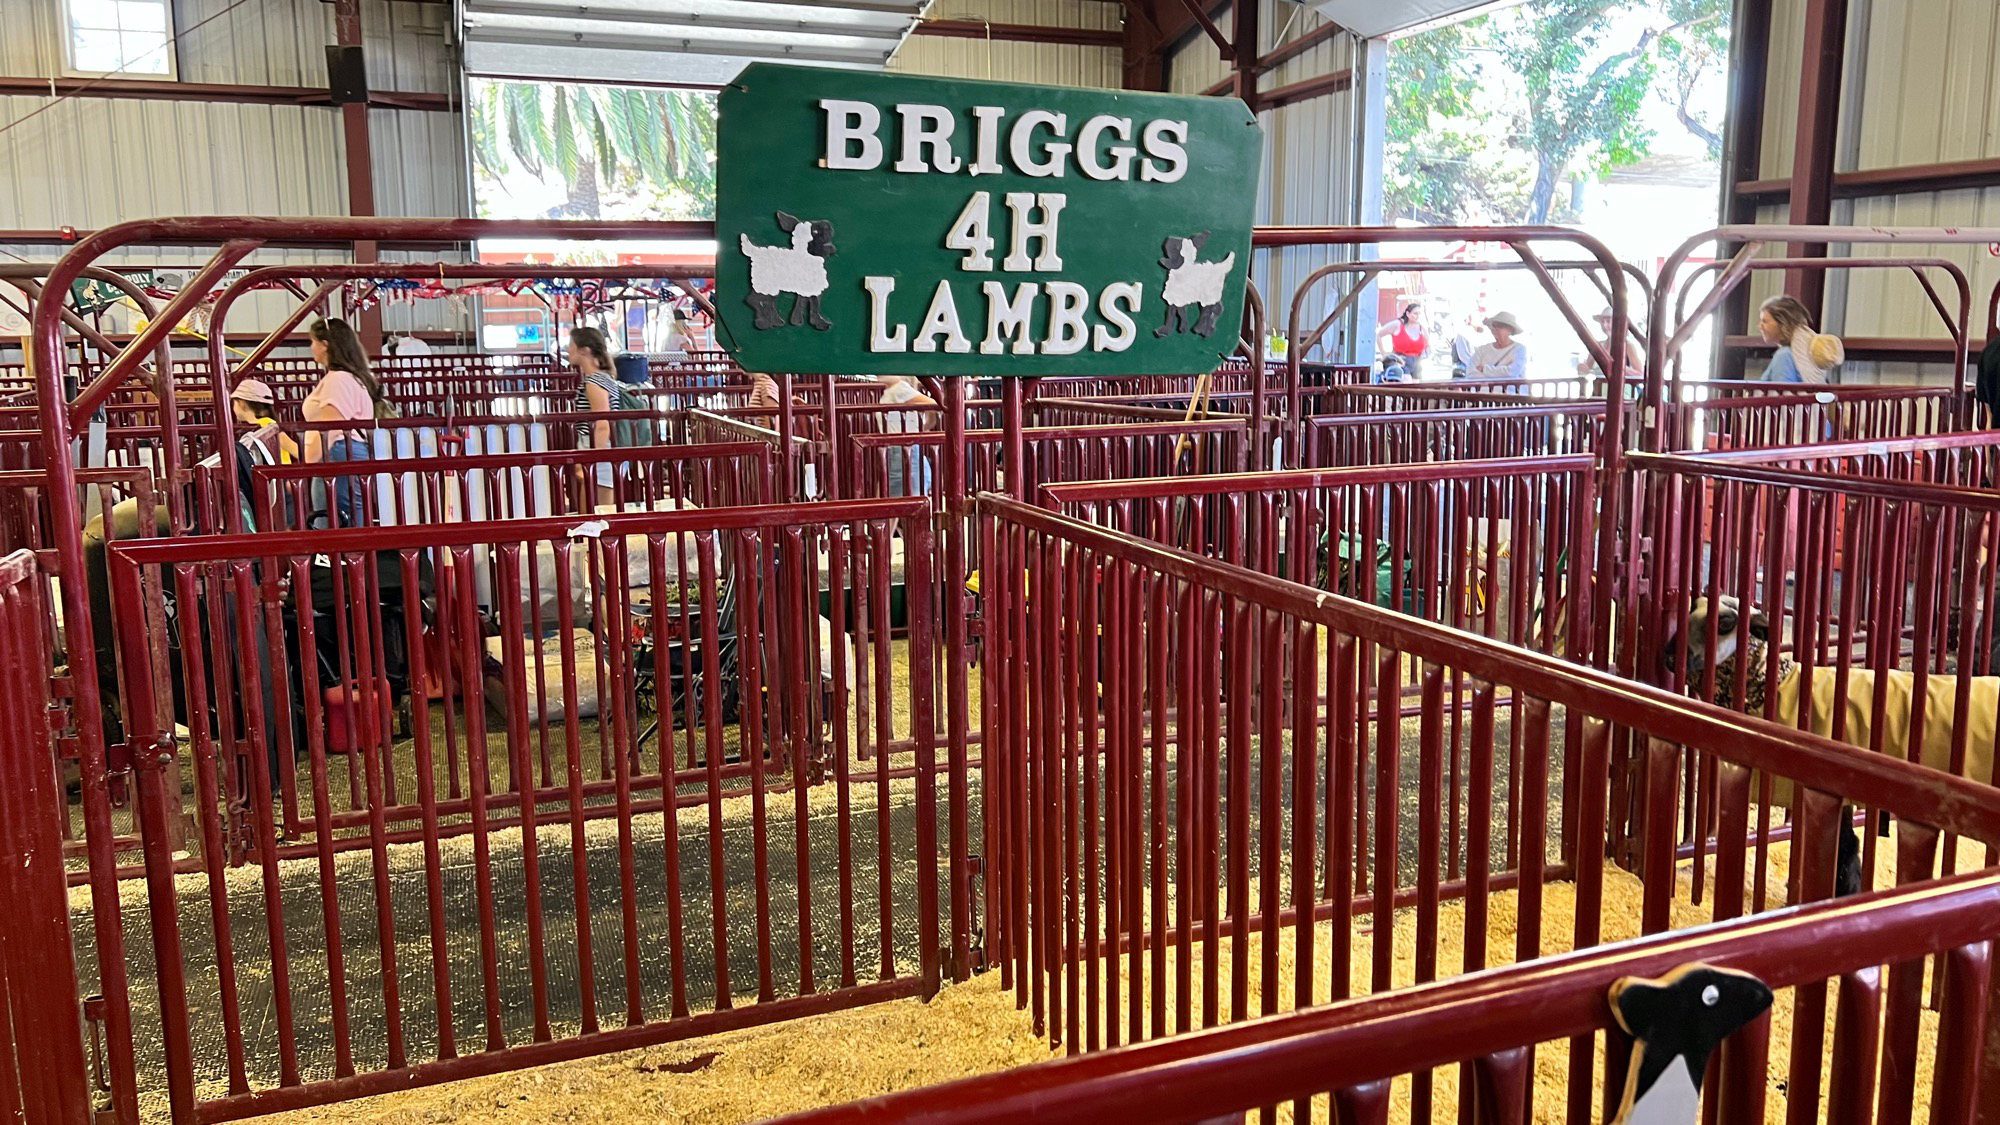 Briggs 4H Lambs